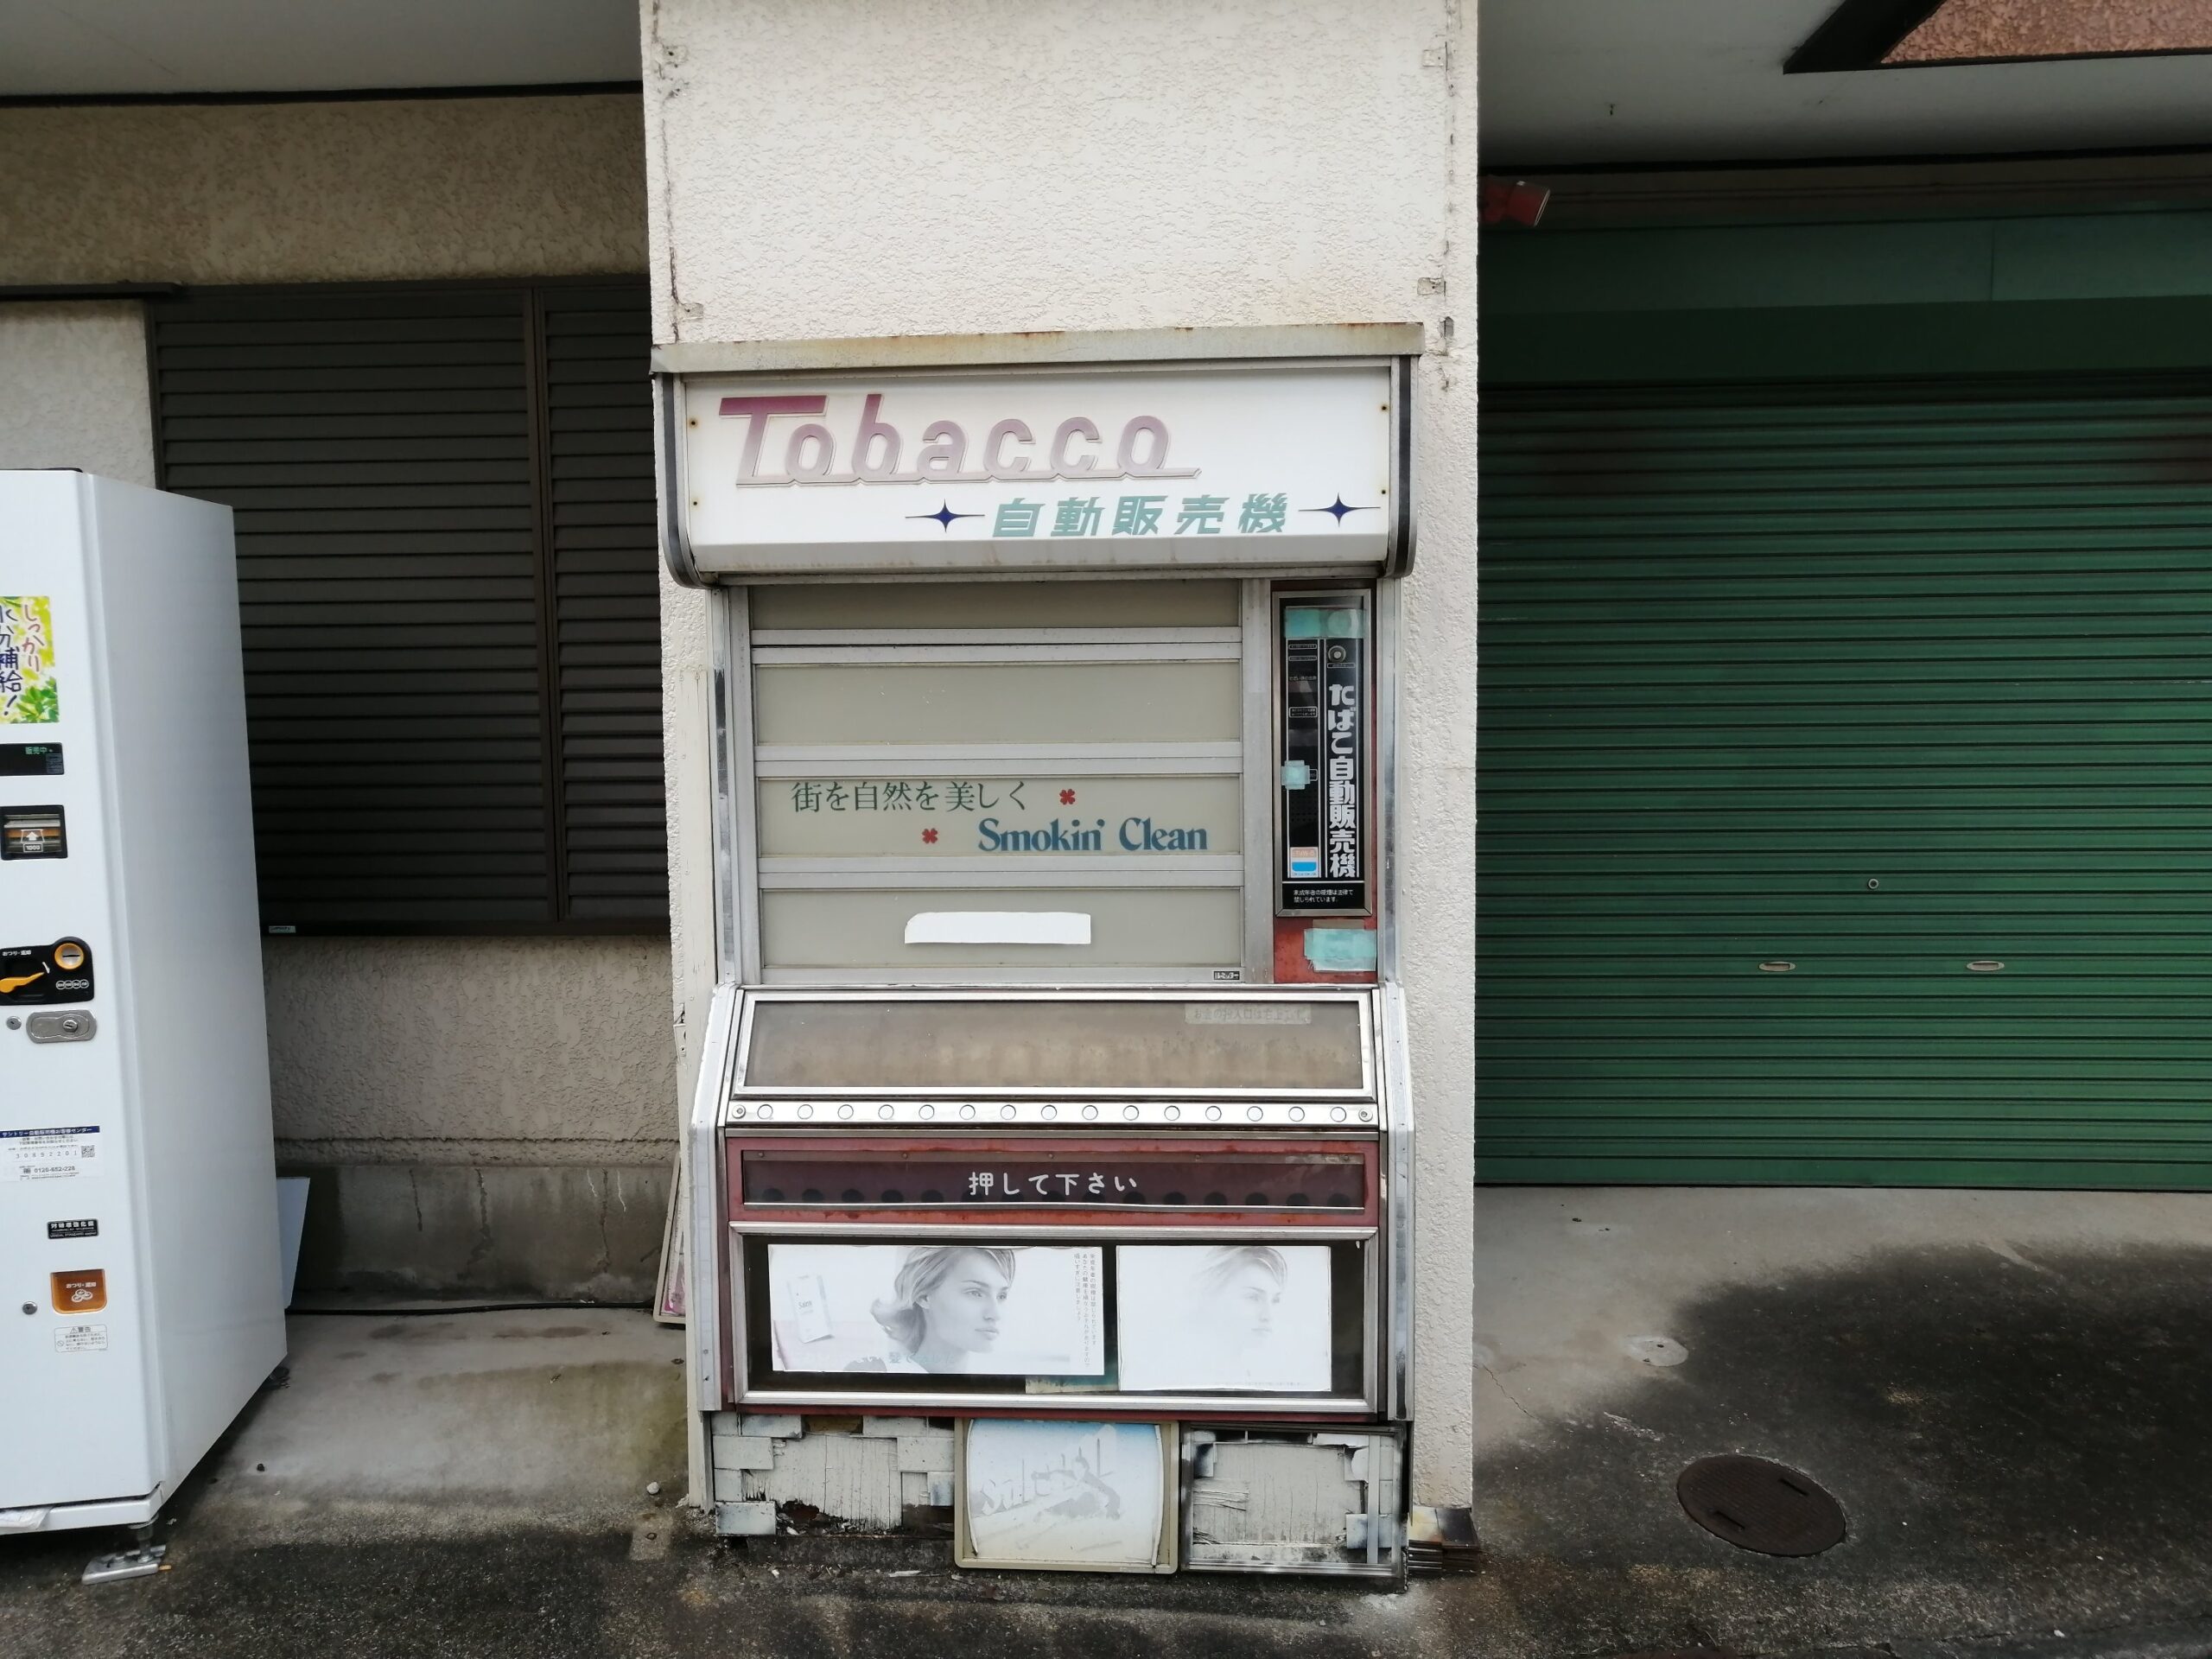 昭和レトロなたばこ自販機「Tobacco 自動販売機 フジタカTVW5」が